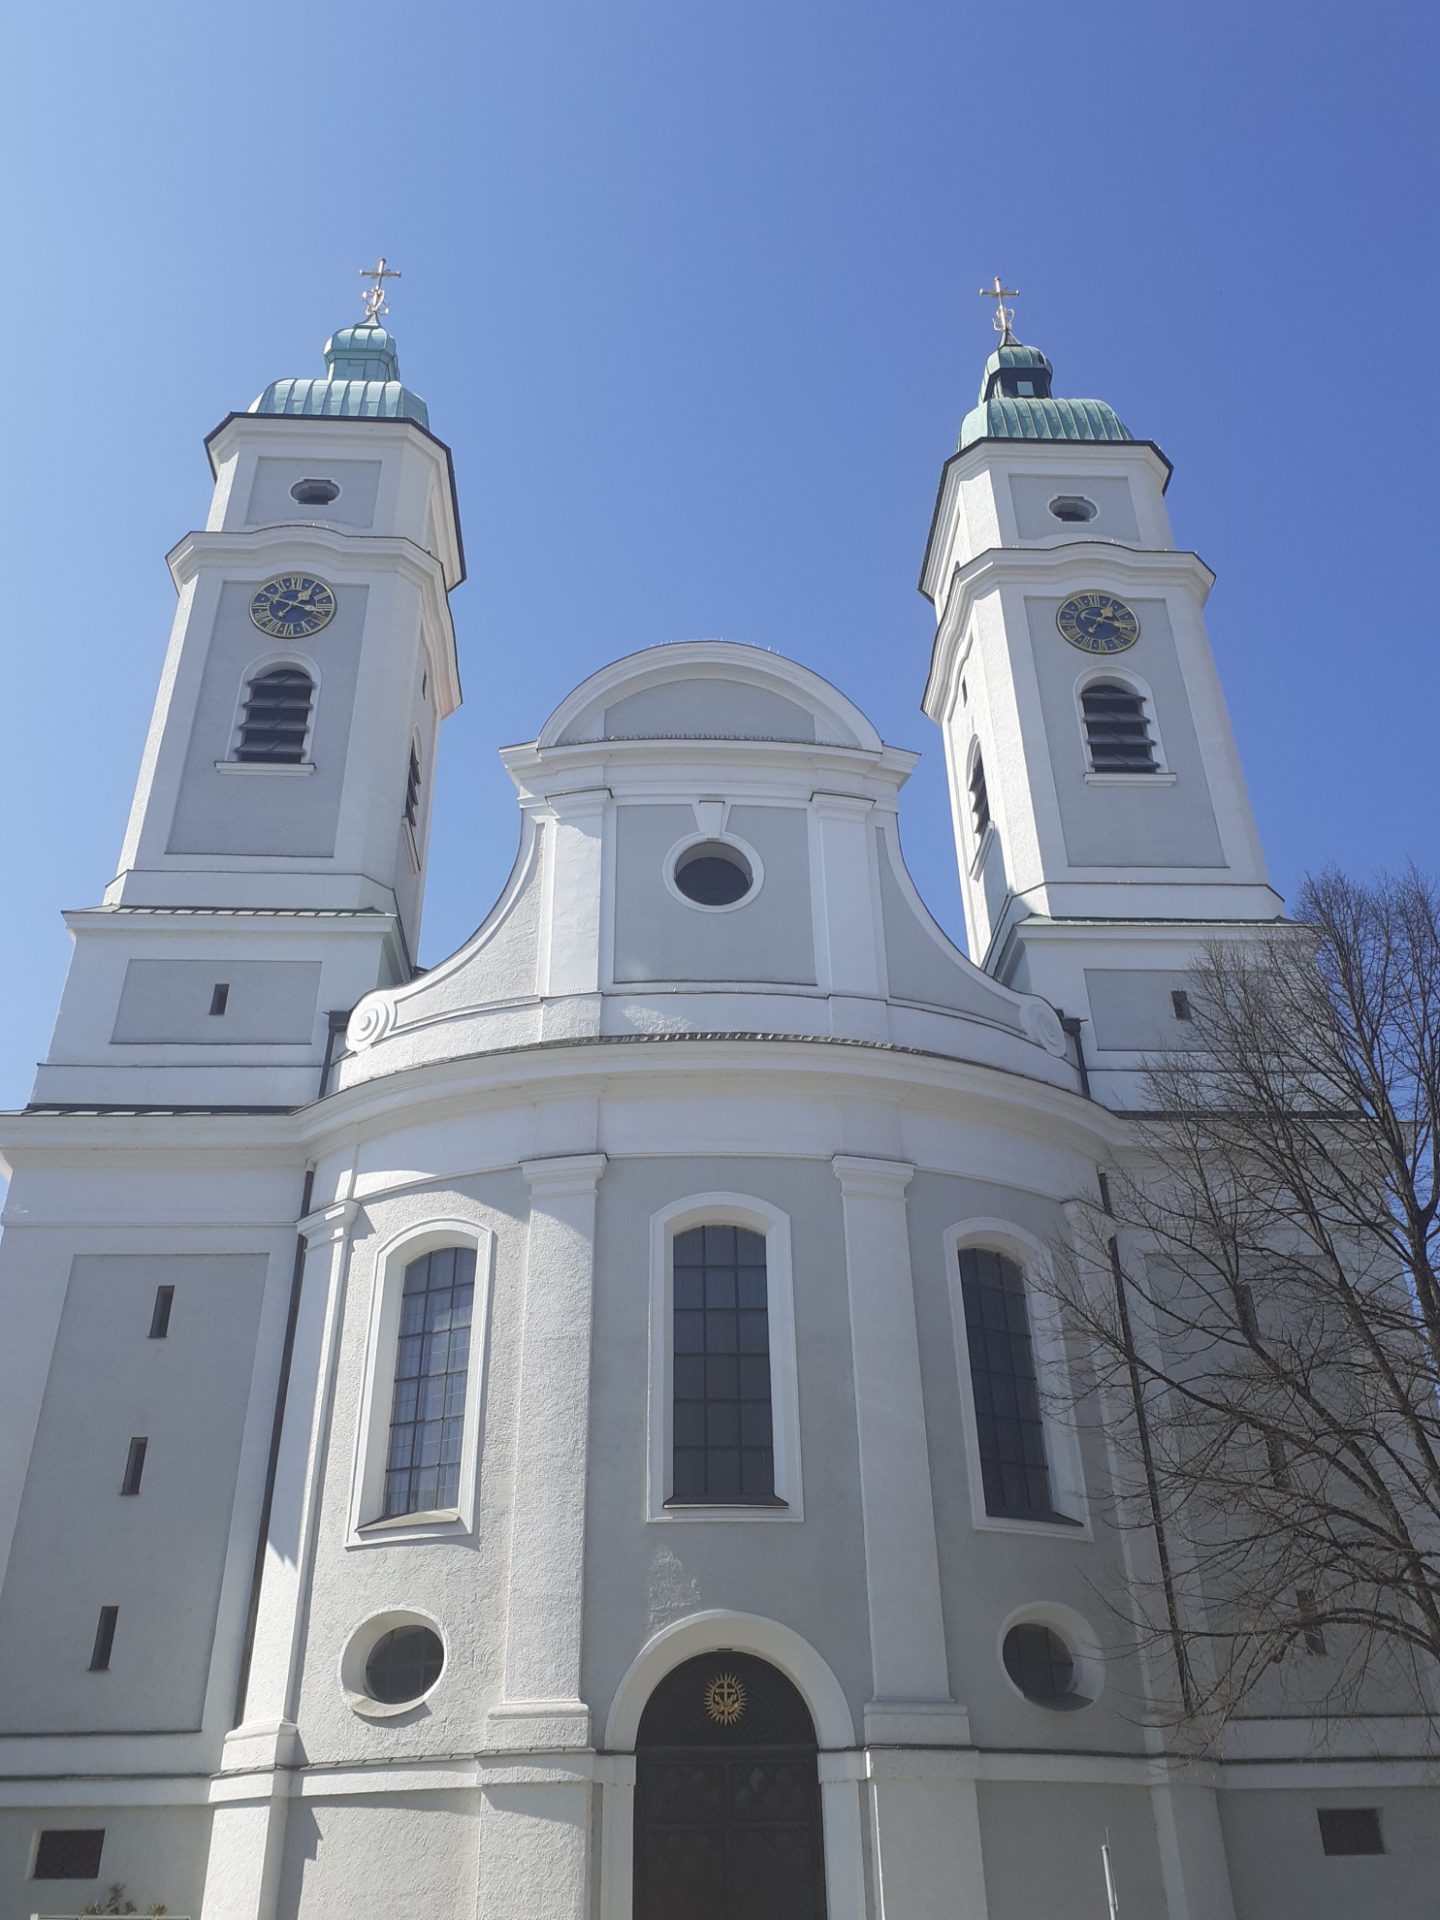 St. Franziskus Kirche München-Giesing